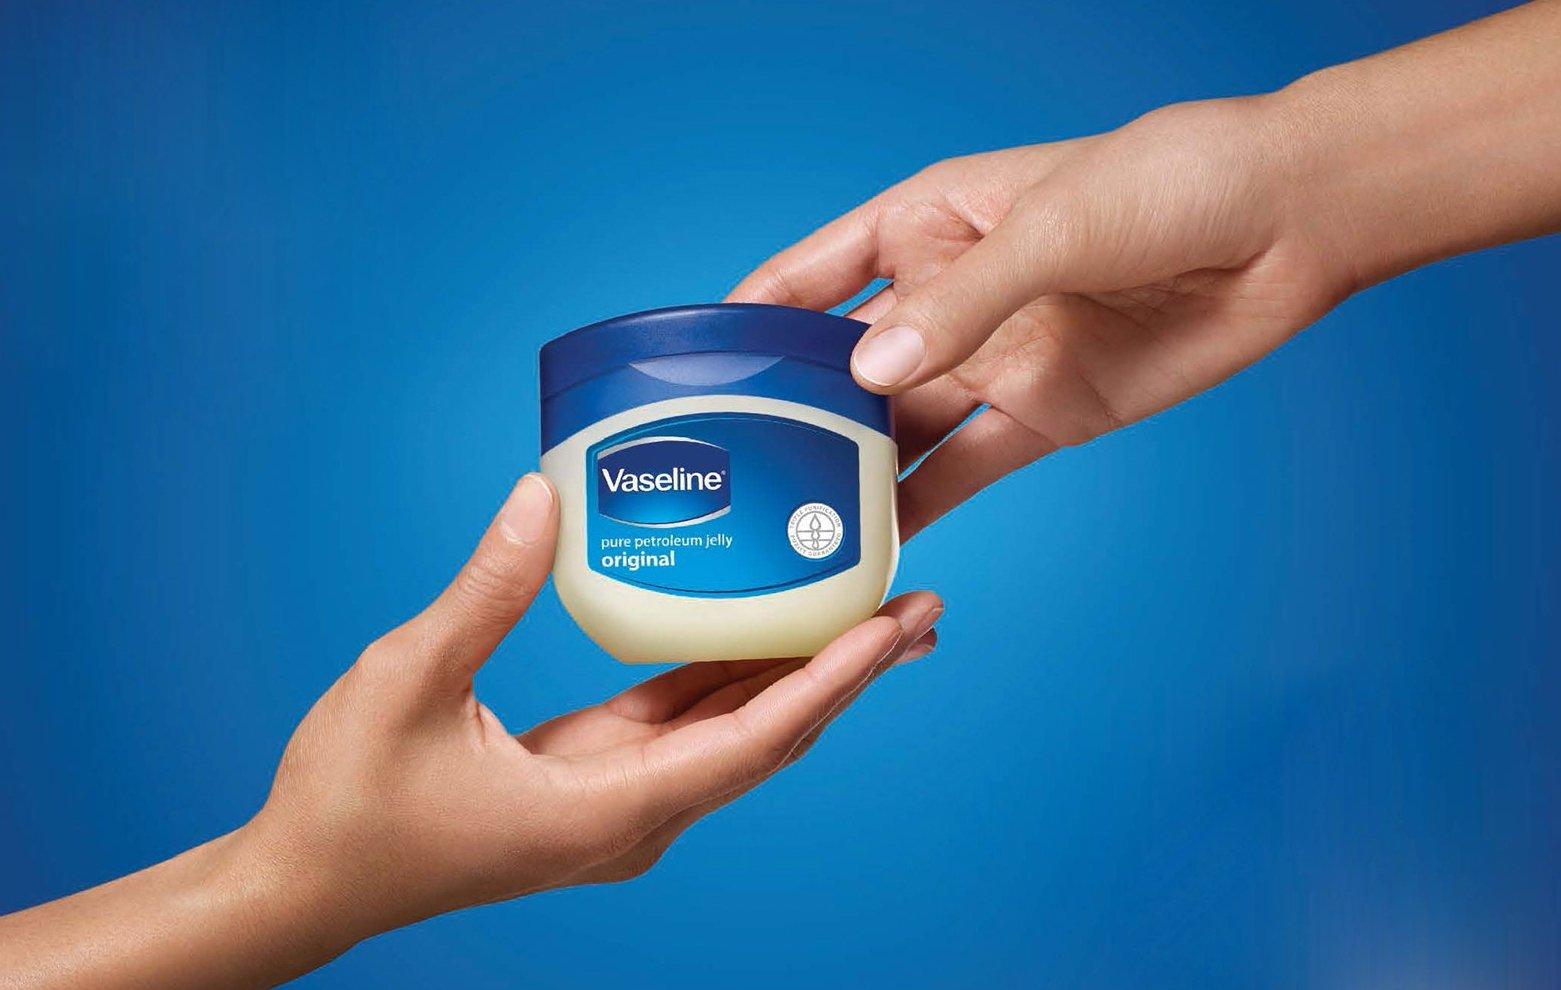 Vaseline: Thương hiệu mỹ phẩm bình dân, an toàn và phổ biến hàng đầu thế giới